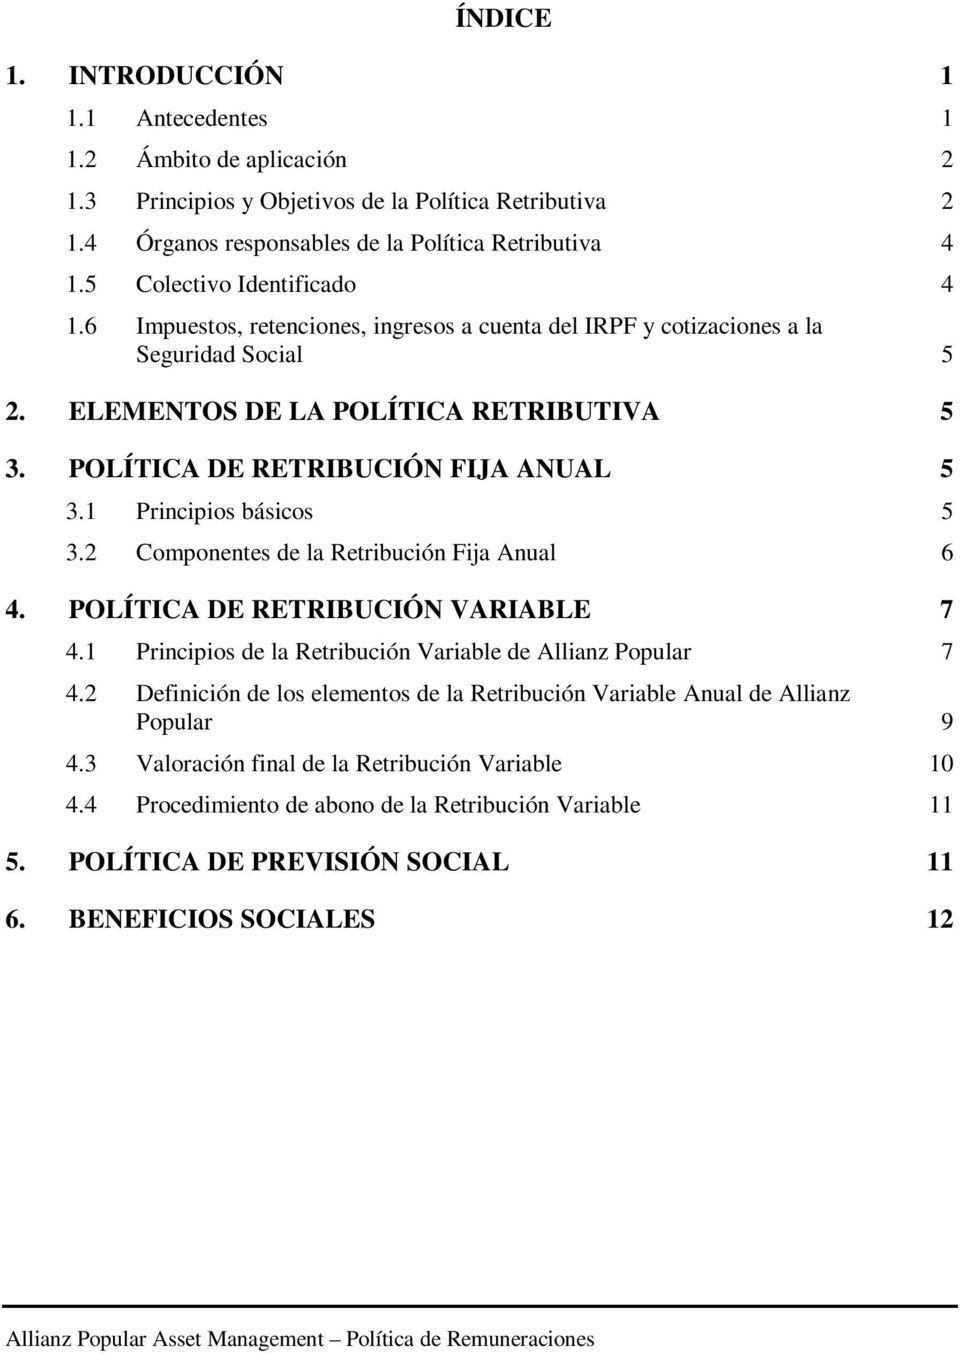 POLÍTICA DE RETRIBUCIÓN FIJA ANUAL 5 3.1 Principios básicos 5 3.2 Componentes de la Retribución Fija Anual 6 4. POLÍTICA DE RETRIBUCIÓN VARIABLE 7 4.